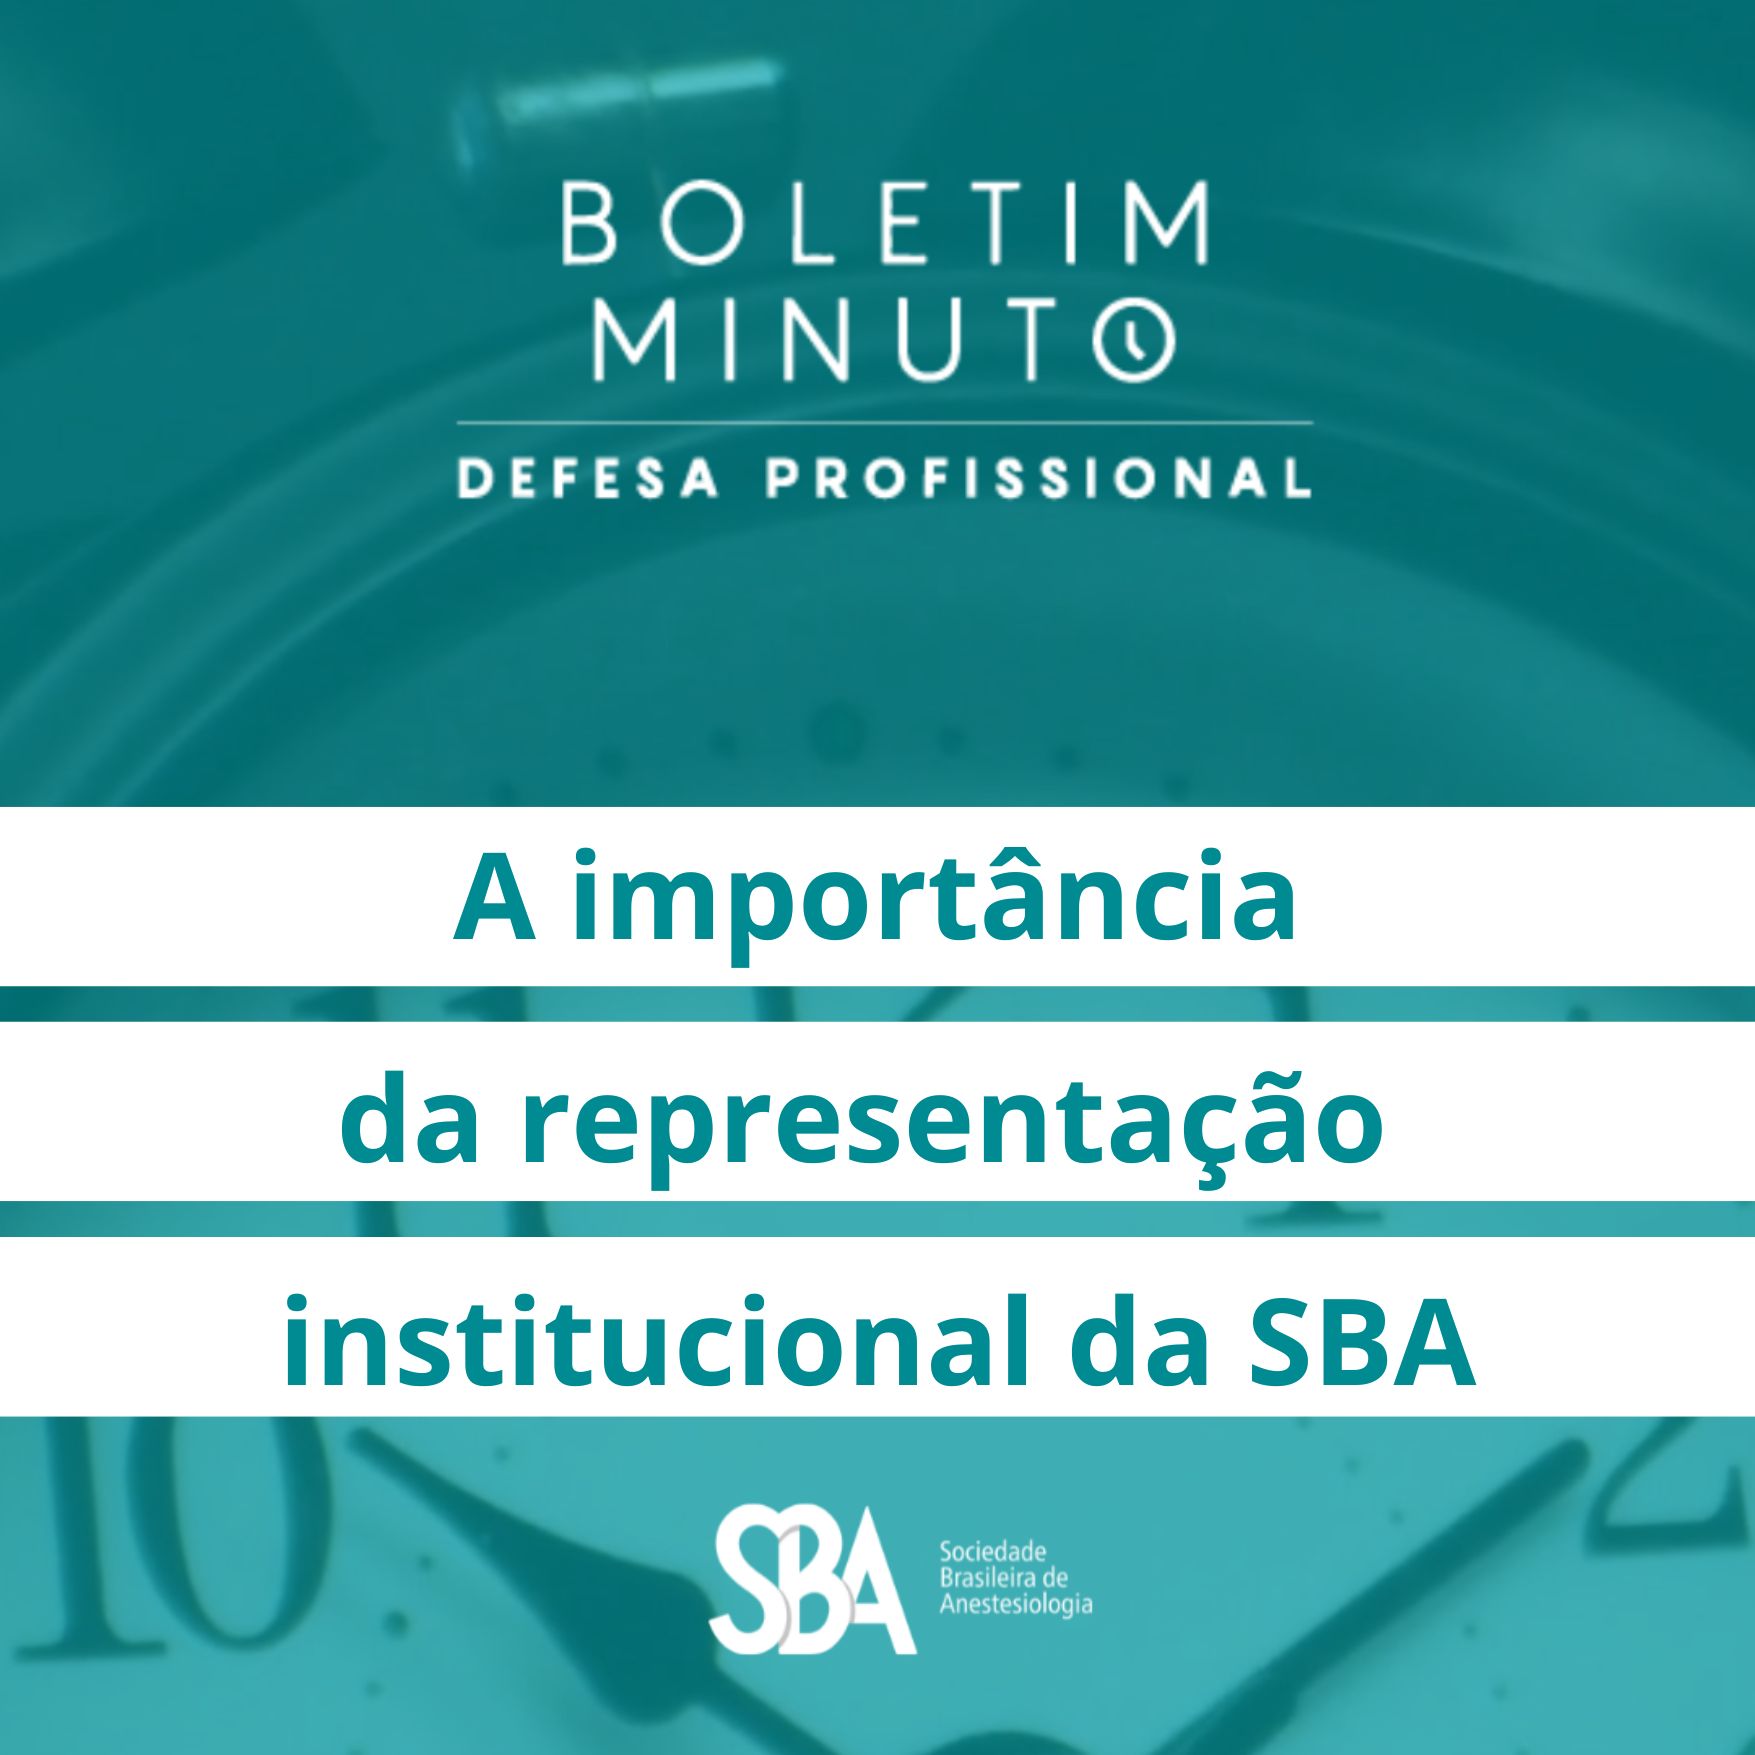 Boletim Minuto – A importância da representação institucional da SBA